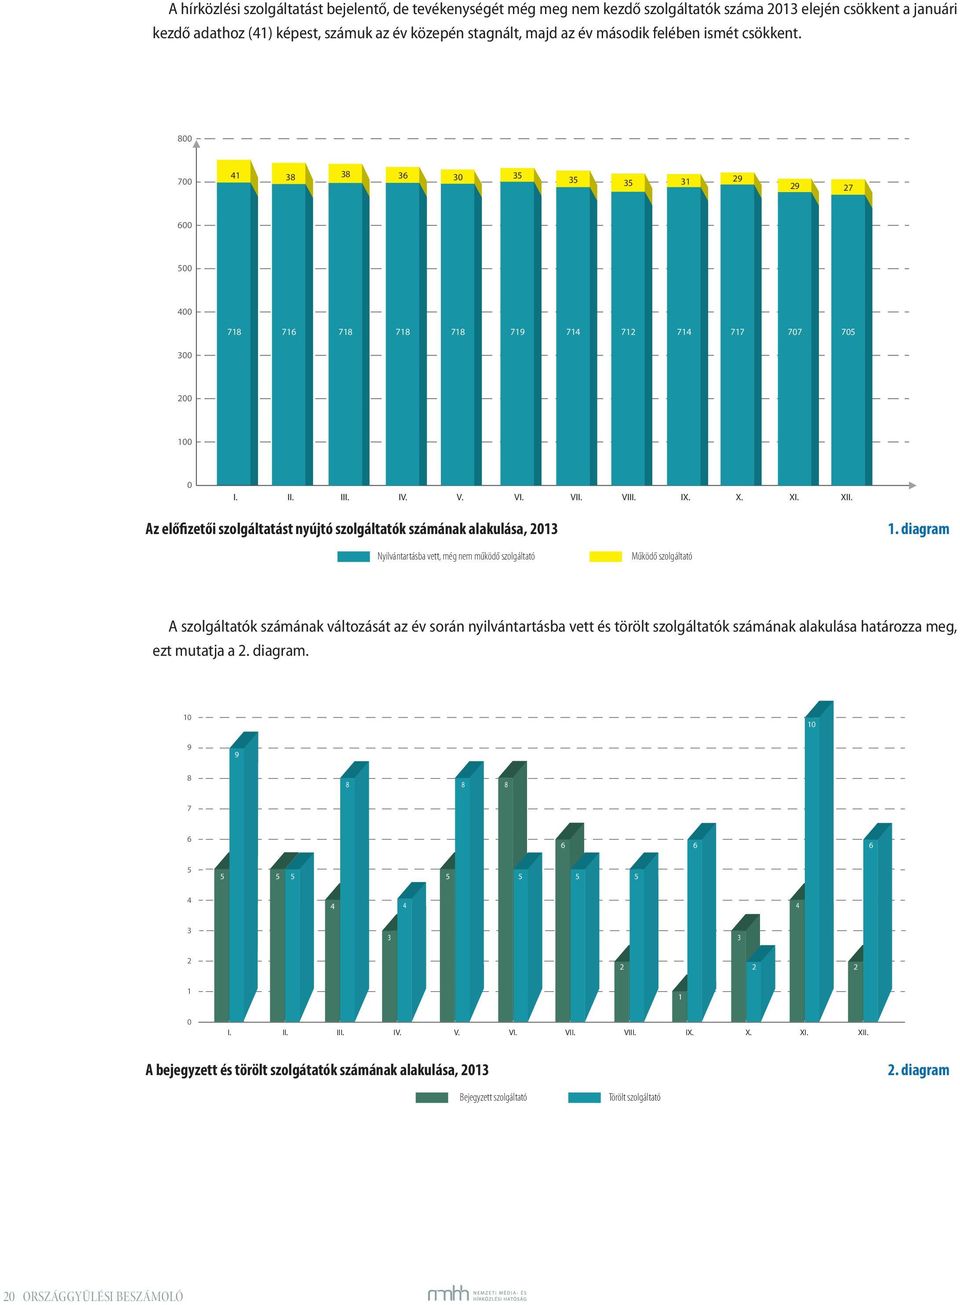 Az előfizetői szolgáltatást nyújtó szolgáltatók számának alakulása, 2013 1.